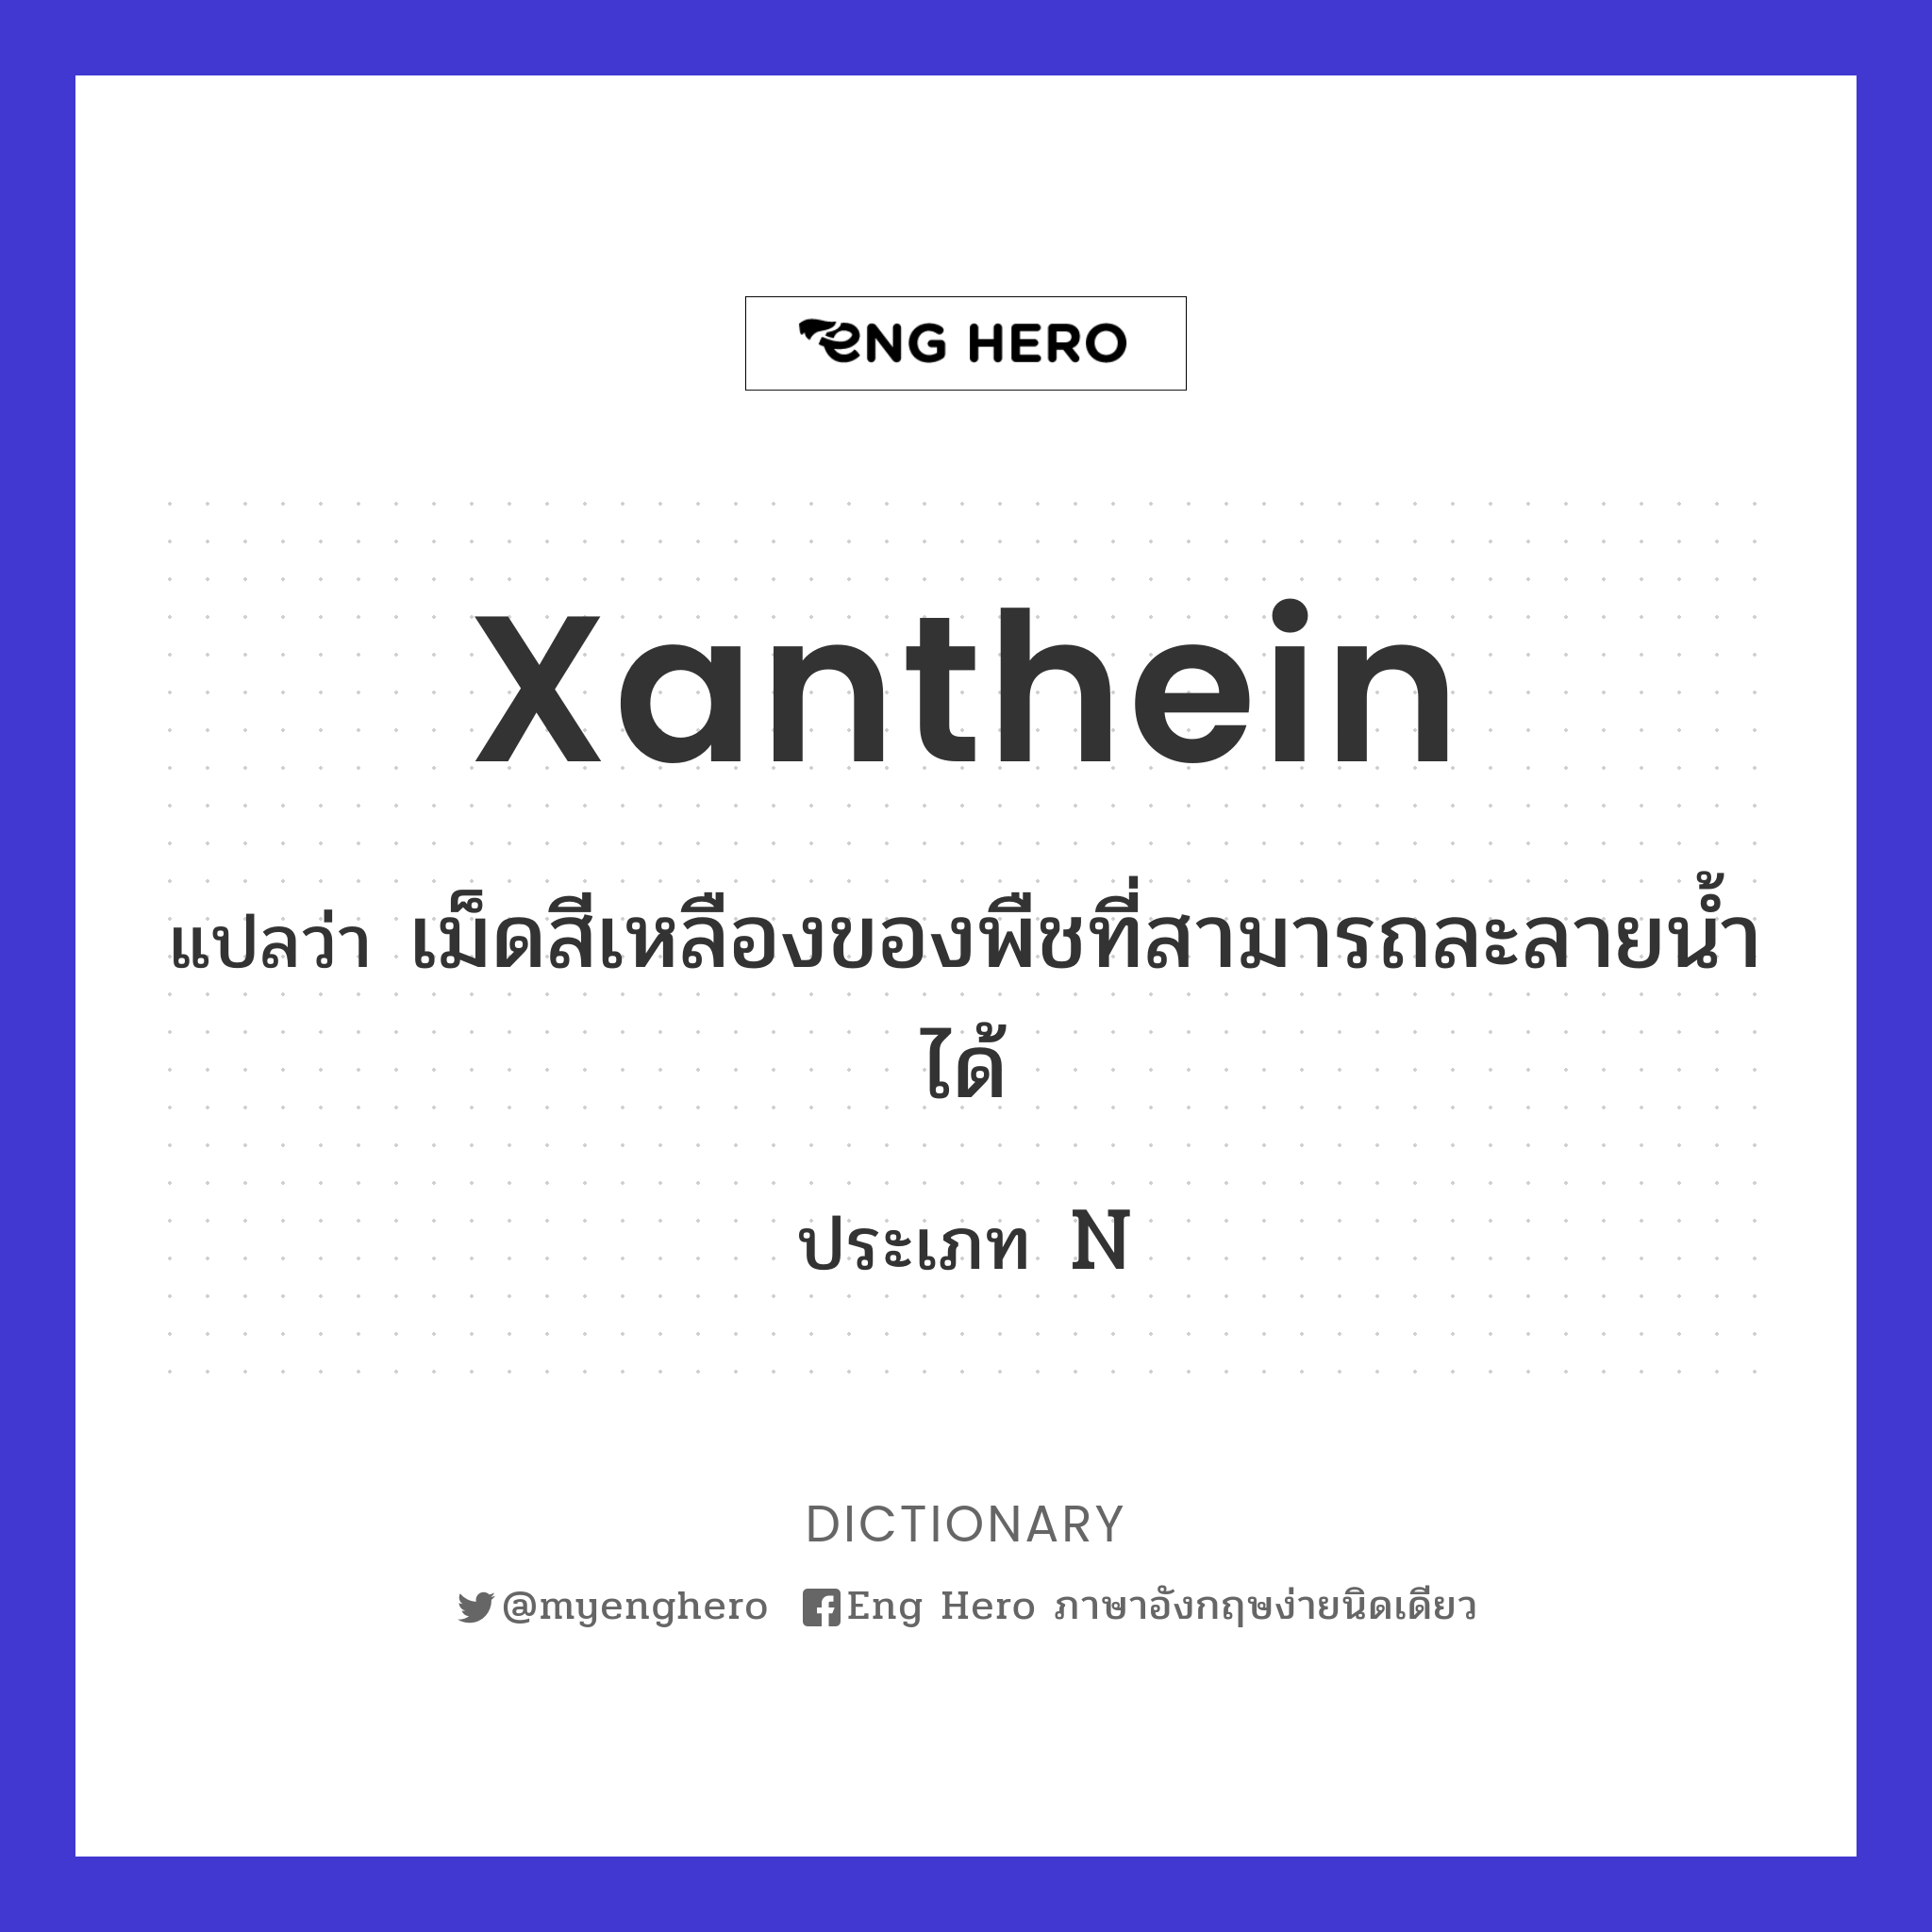 xanthein